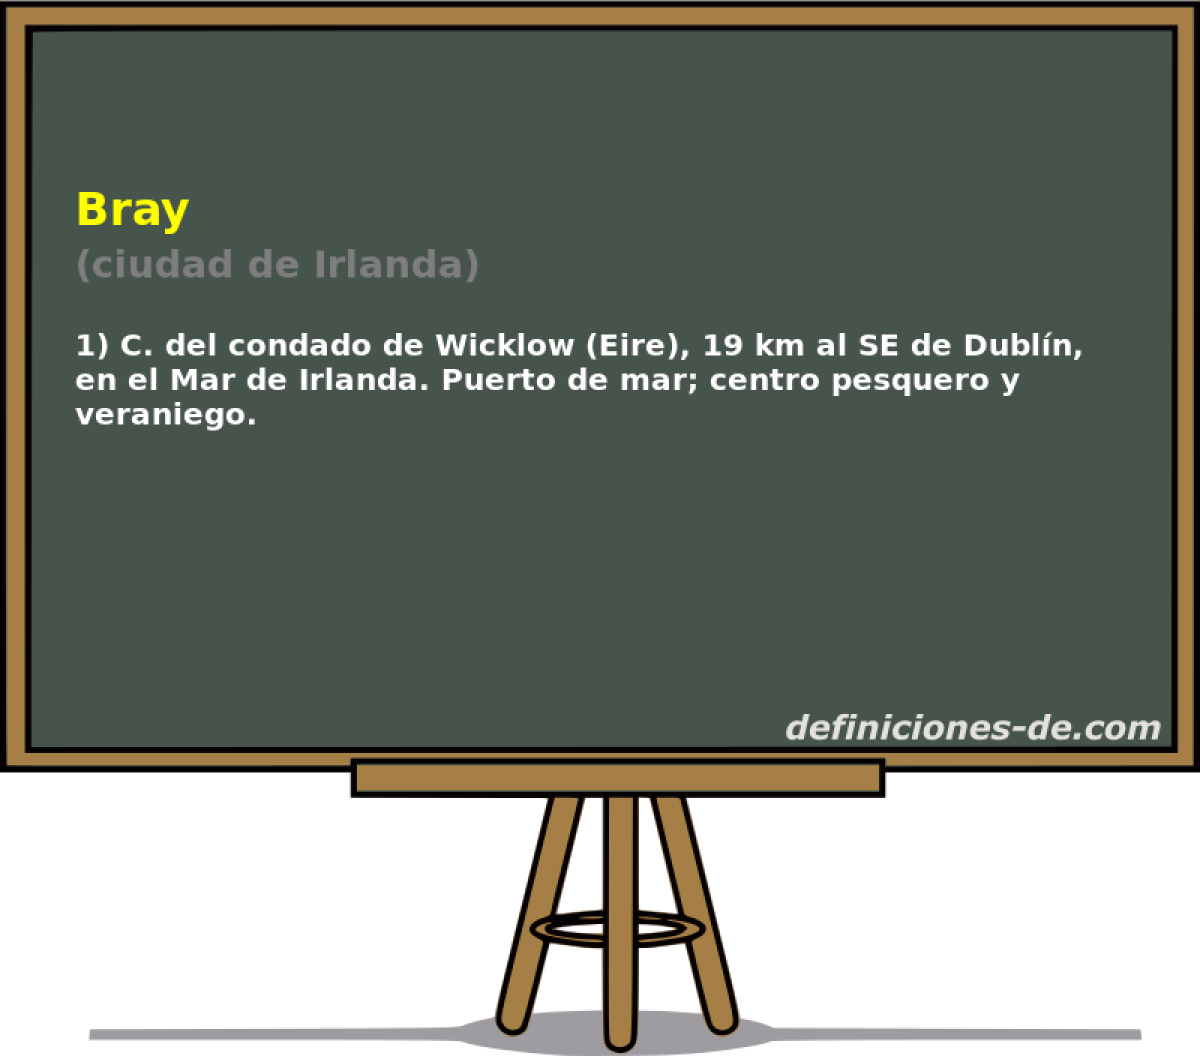 Bray (ciudad de Irlanda)